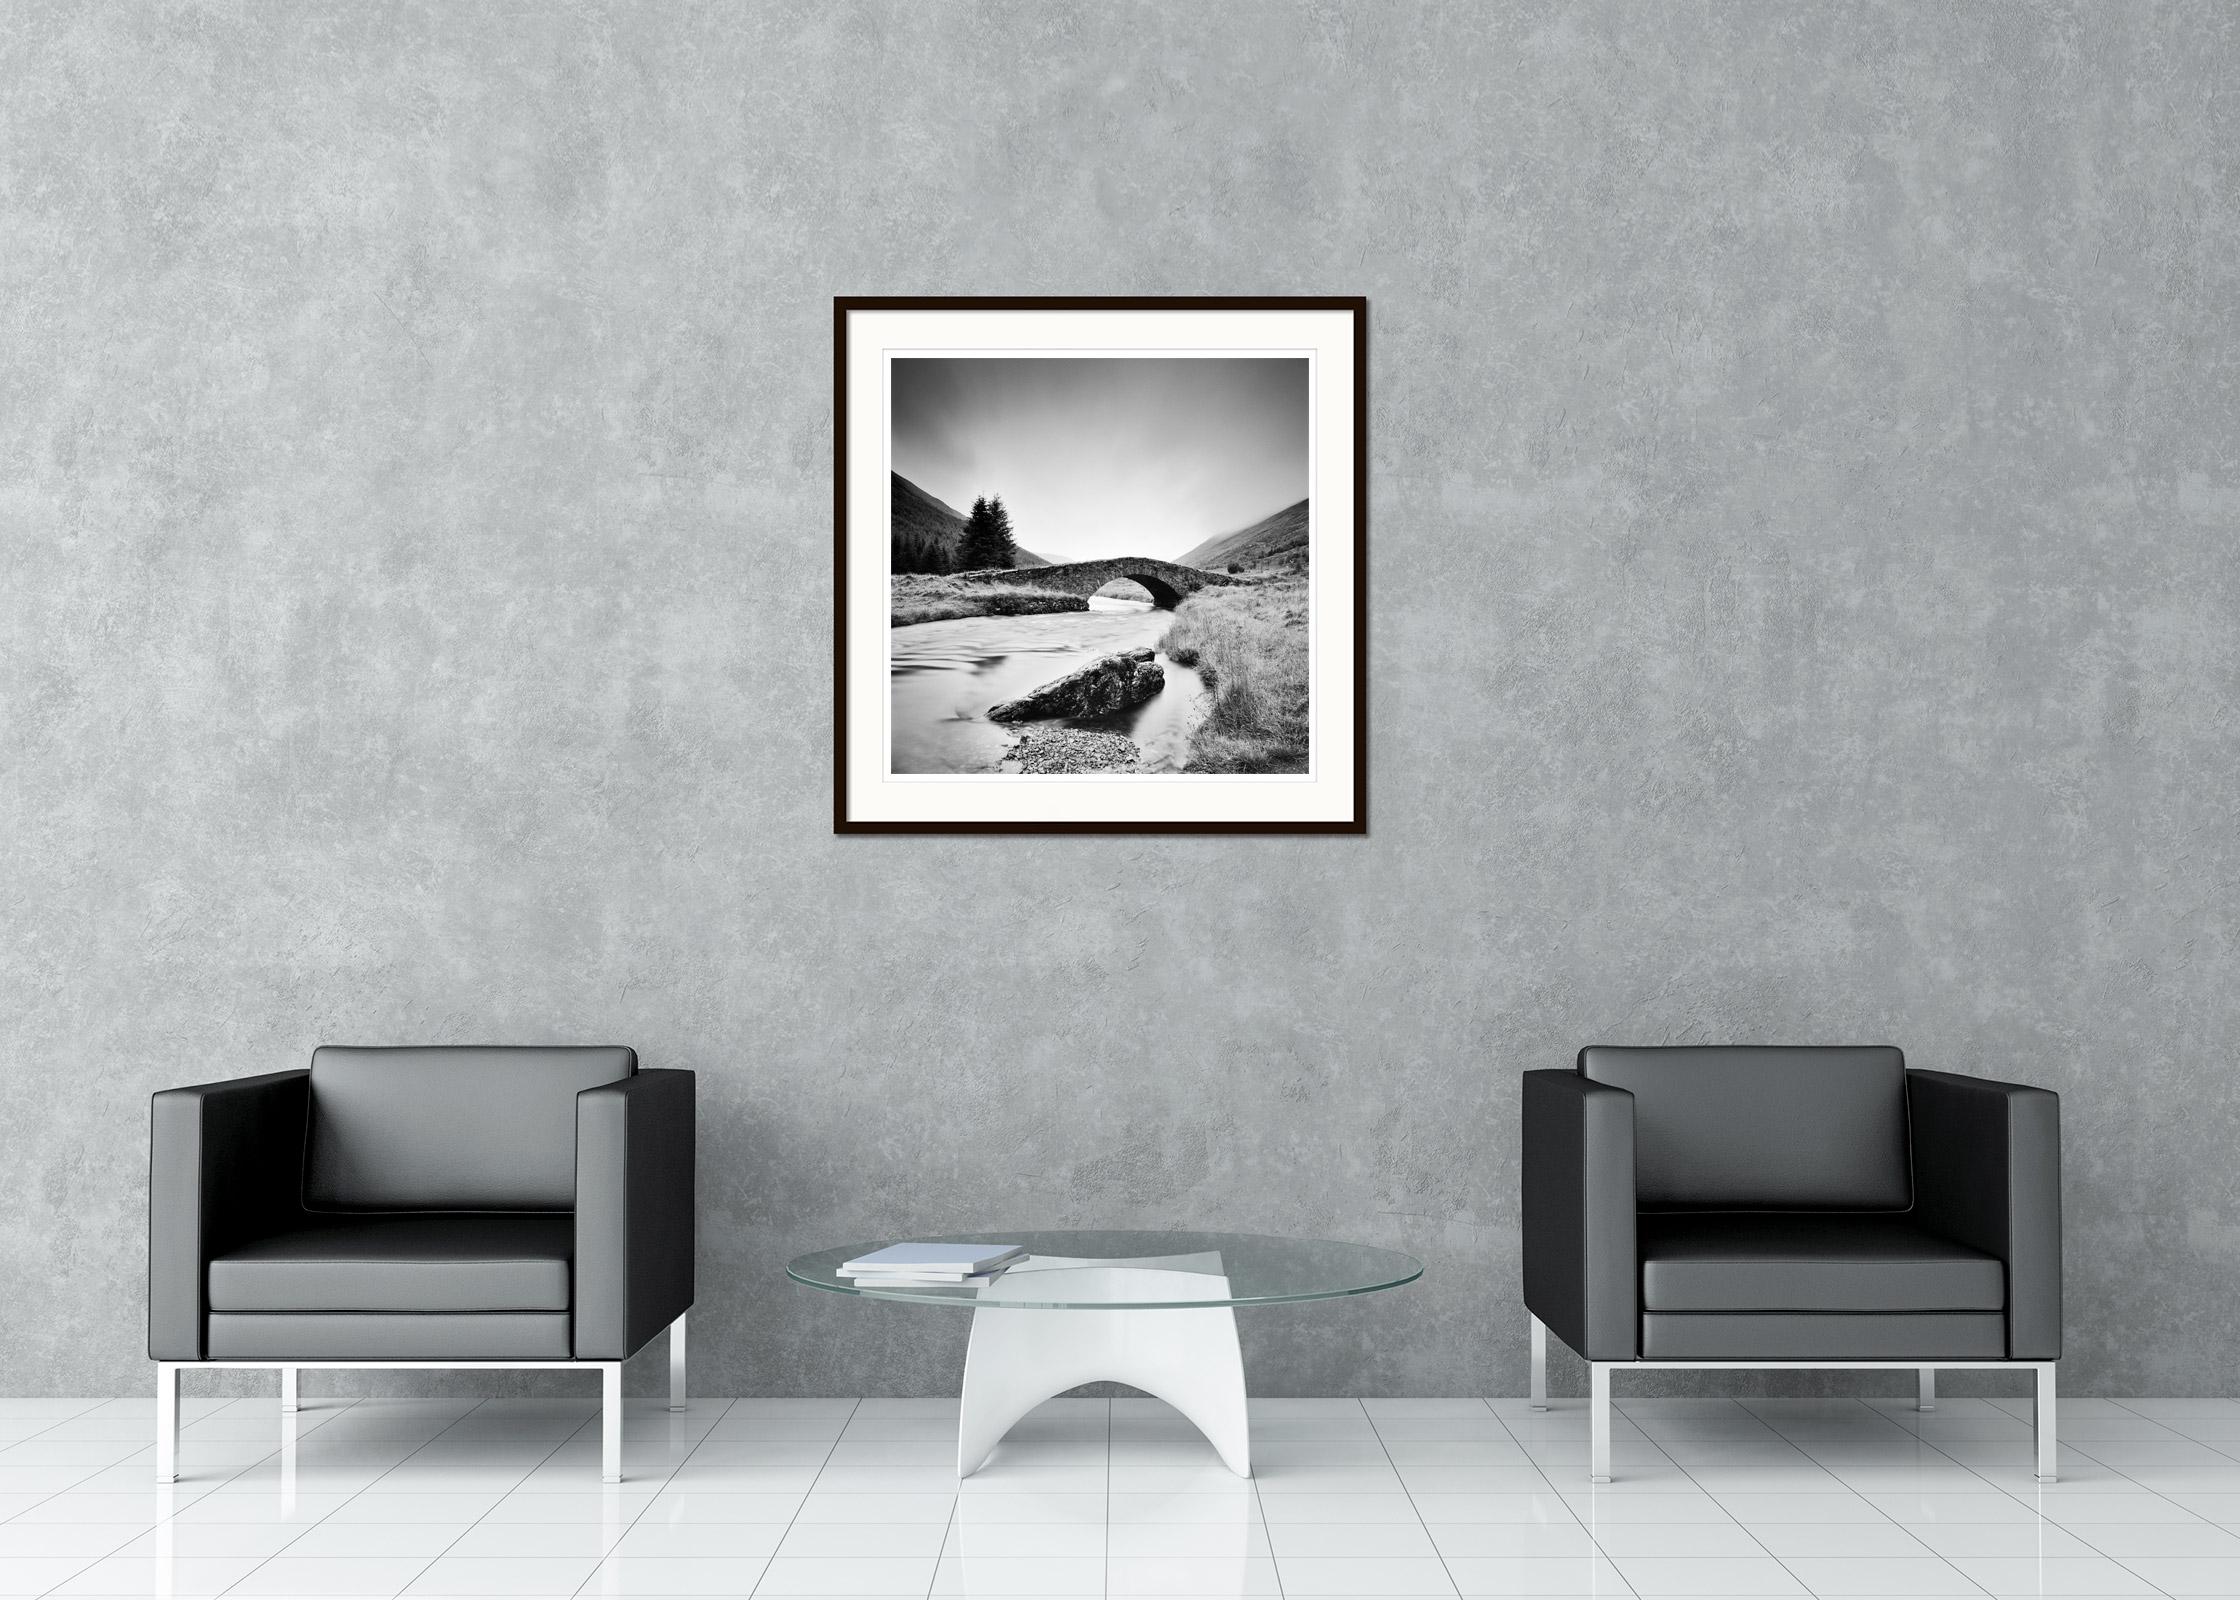 Minimalistische Schwarz-Weiß-Fotografie - Alte Steinbrücke über einen Fluss in den schottischen Highlands. Pigmenttintendruck, Auflage 9, signiert, betitelt, datiert und nummeriert vom Künstler. Mit Echtheitszertifikat. Bedruckt mit einem 4 cm